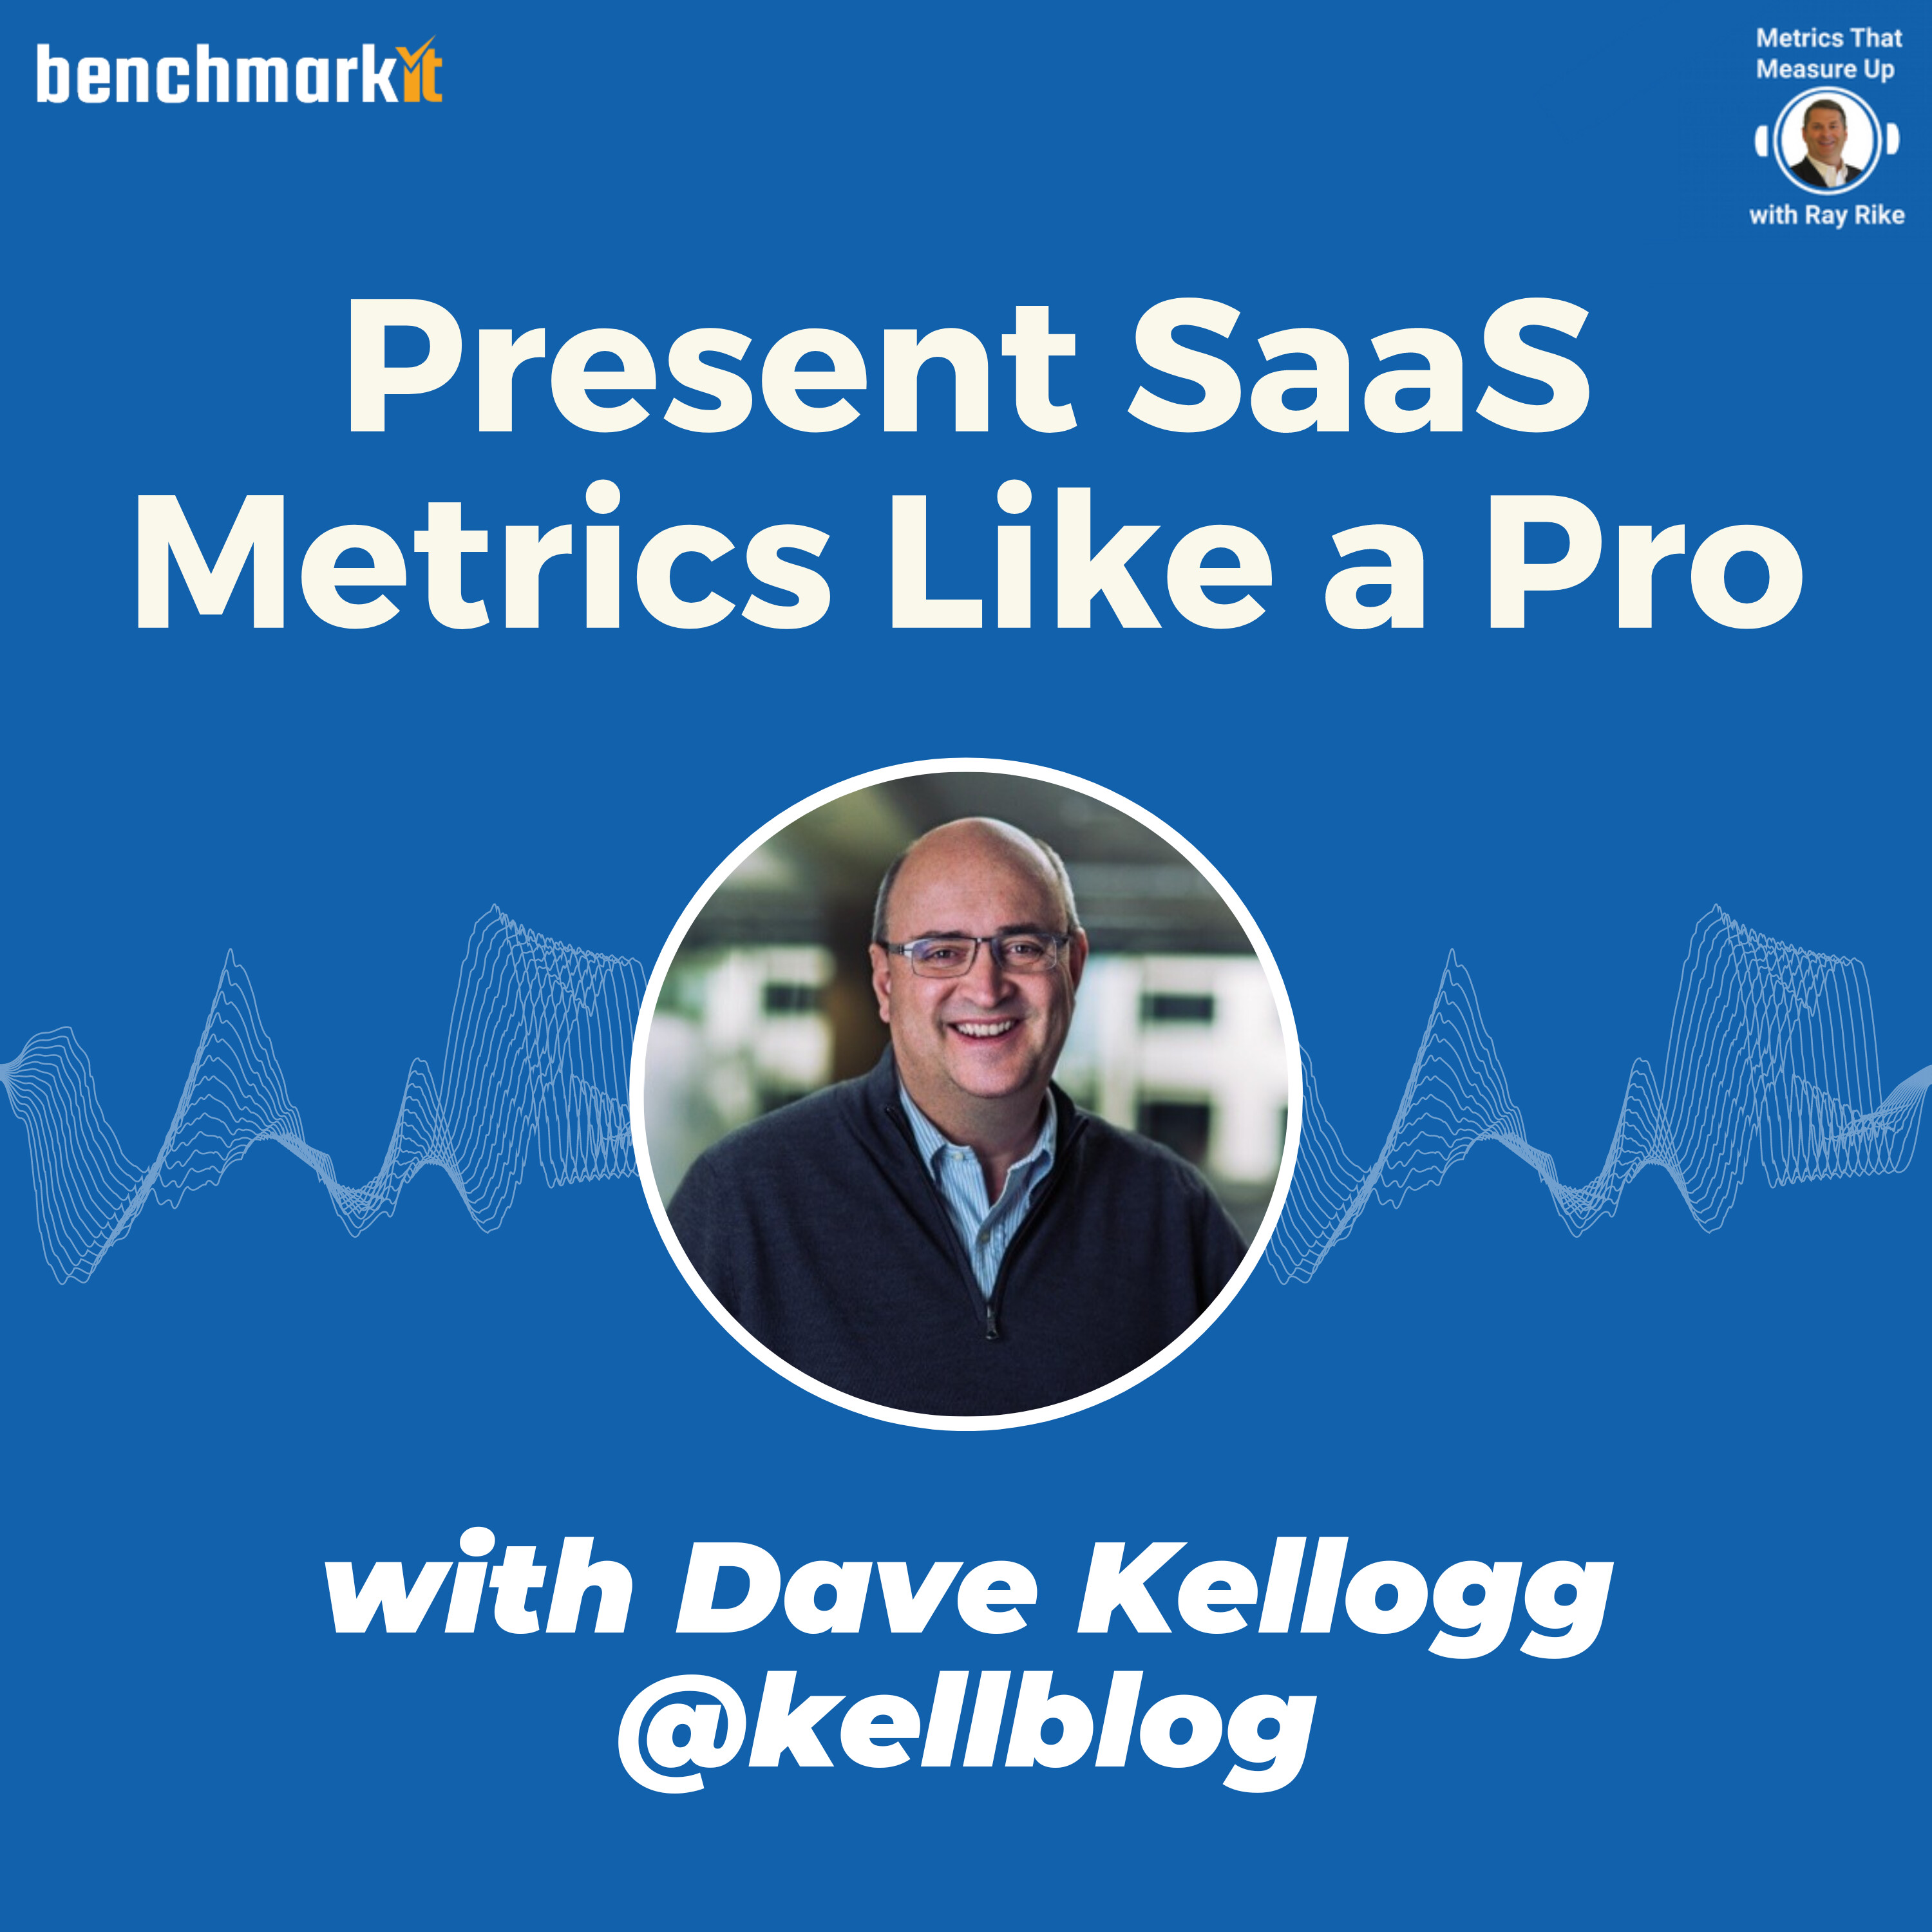 Present SaaS Metrics Like a Pro - with Dave Kellogg